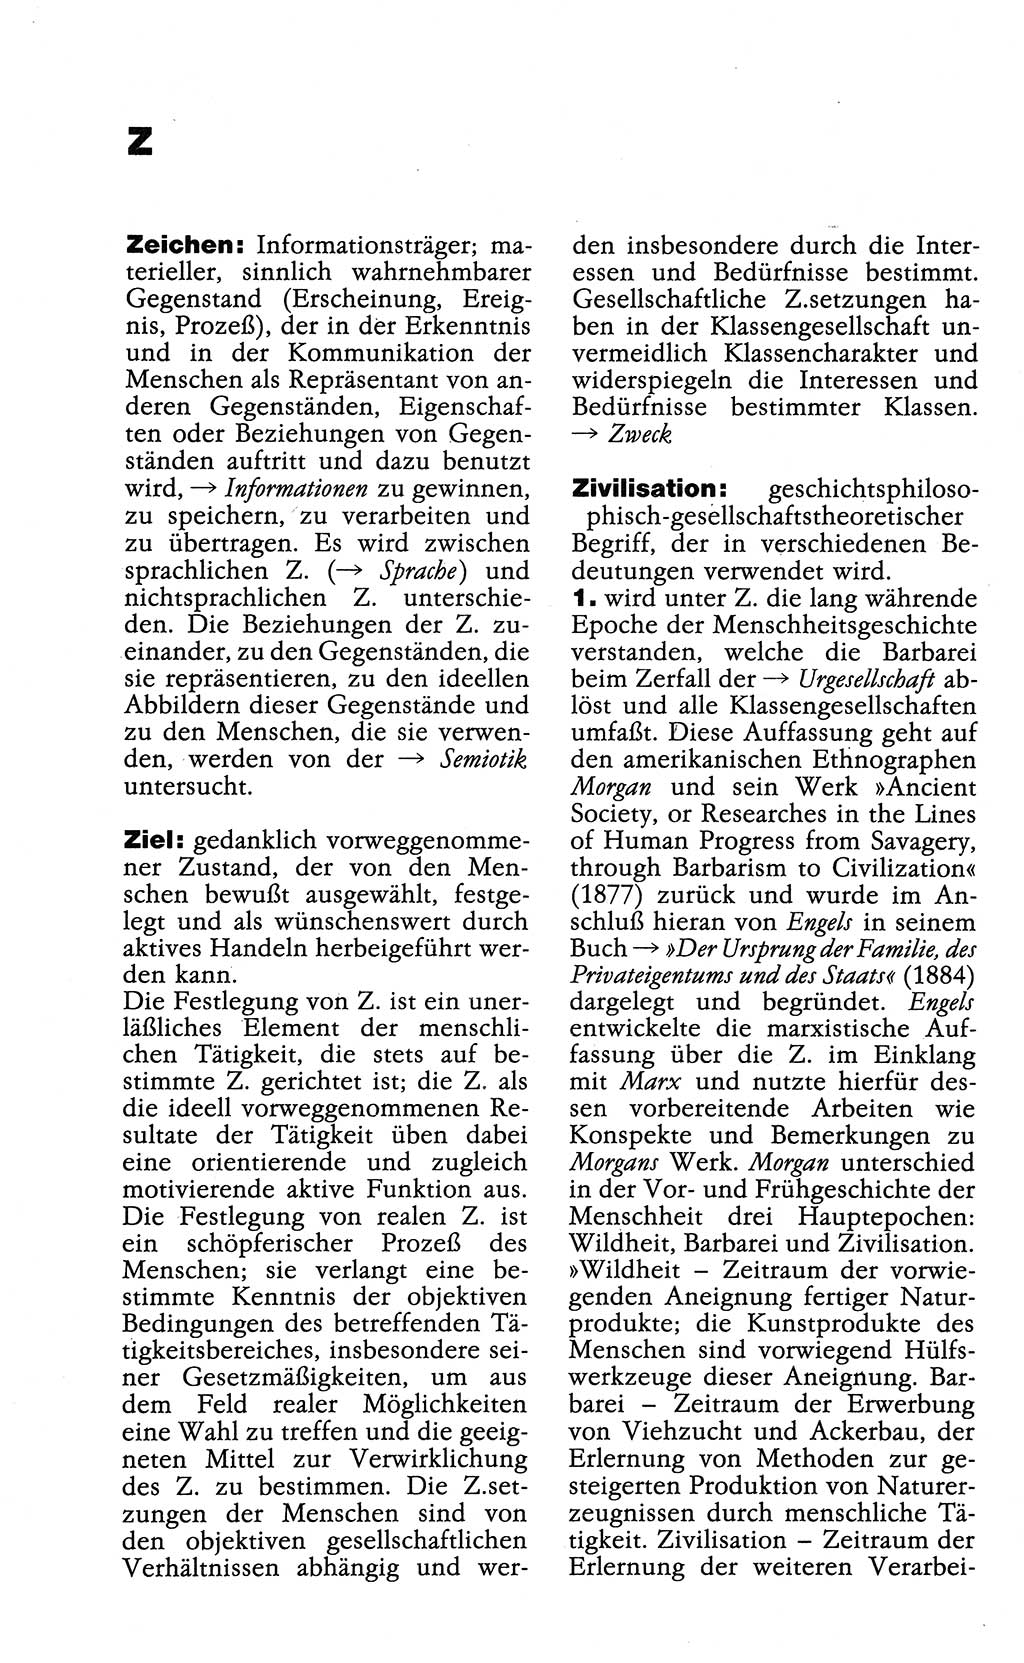 Wörterbuch der marxistisch-leninistischen Philosophie [Deutsche Demokratische Republik (DDR)] 1985, Seite 582 (Wb. ML Phil. DDR 1985, S. 582)